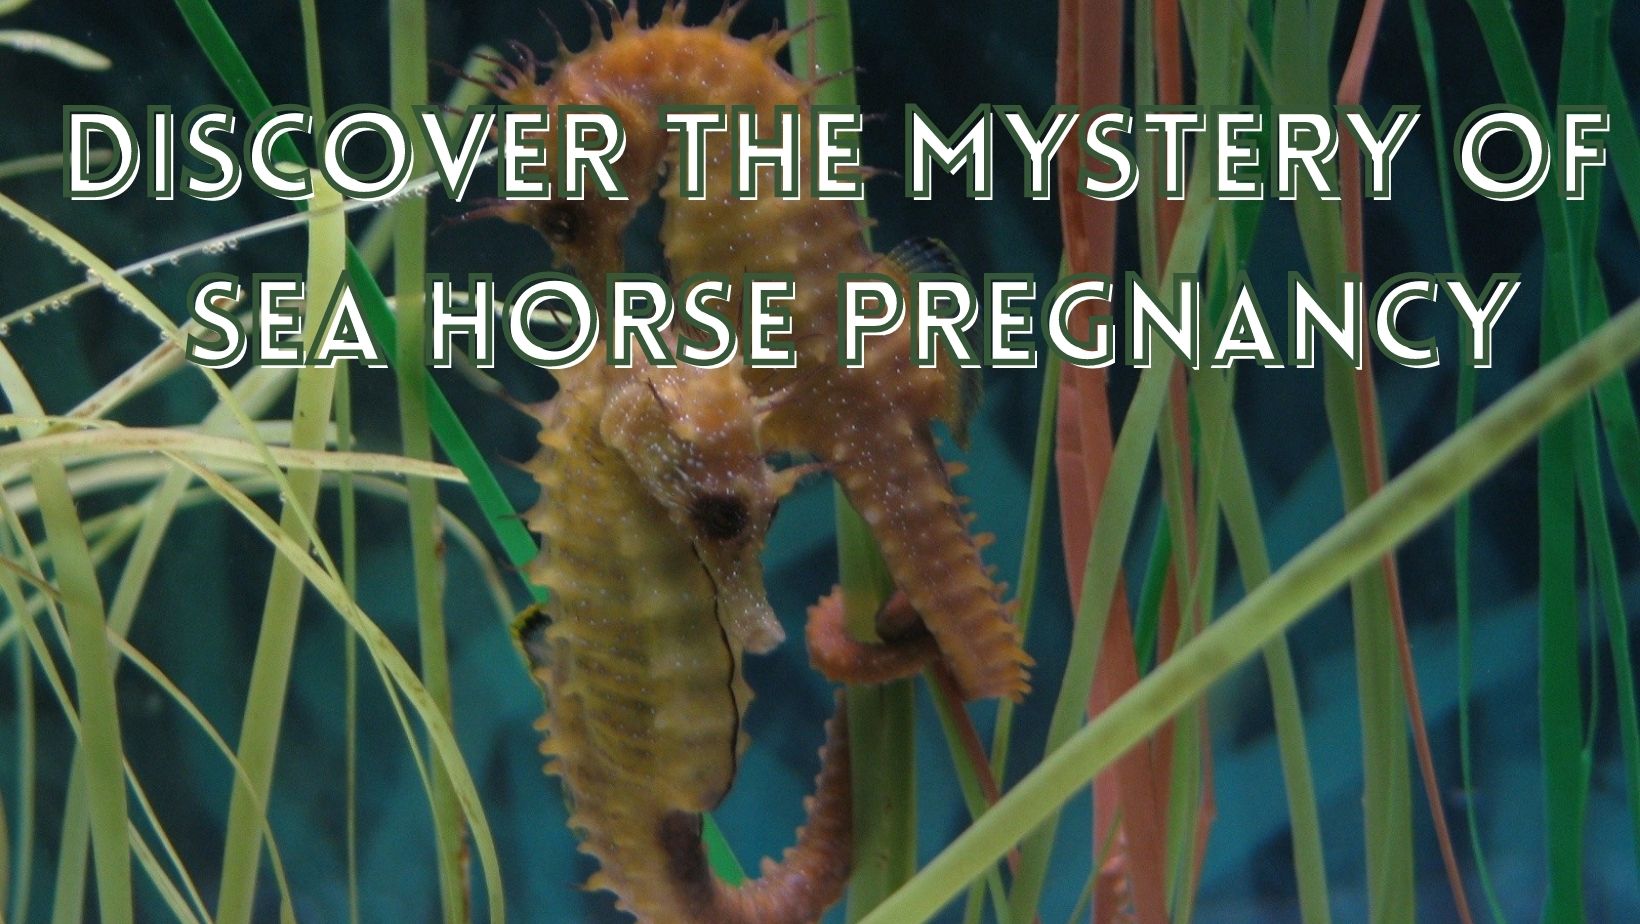 Seahorse pregnancy